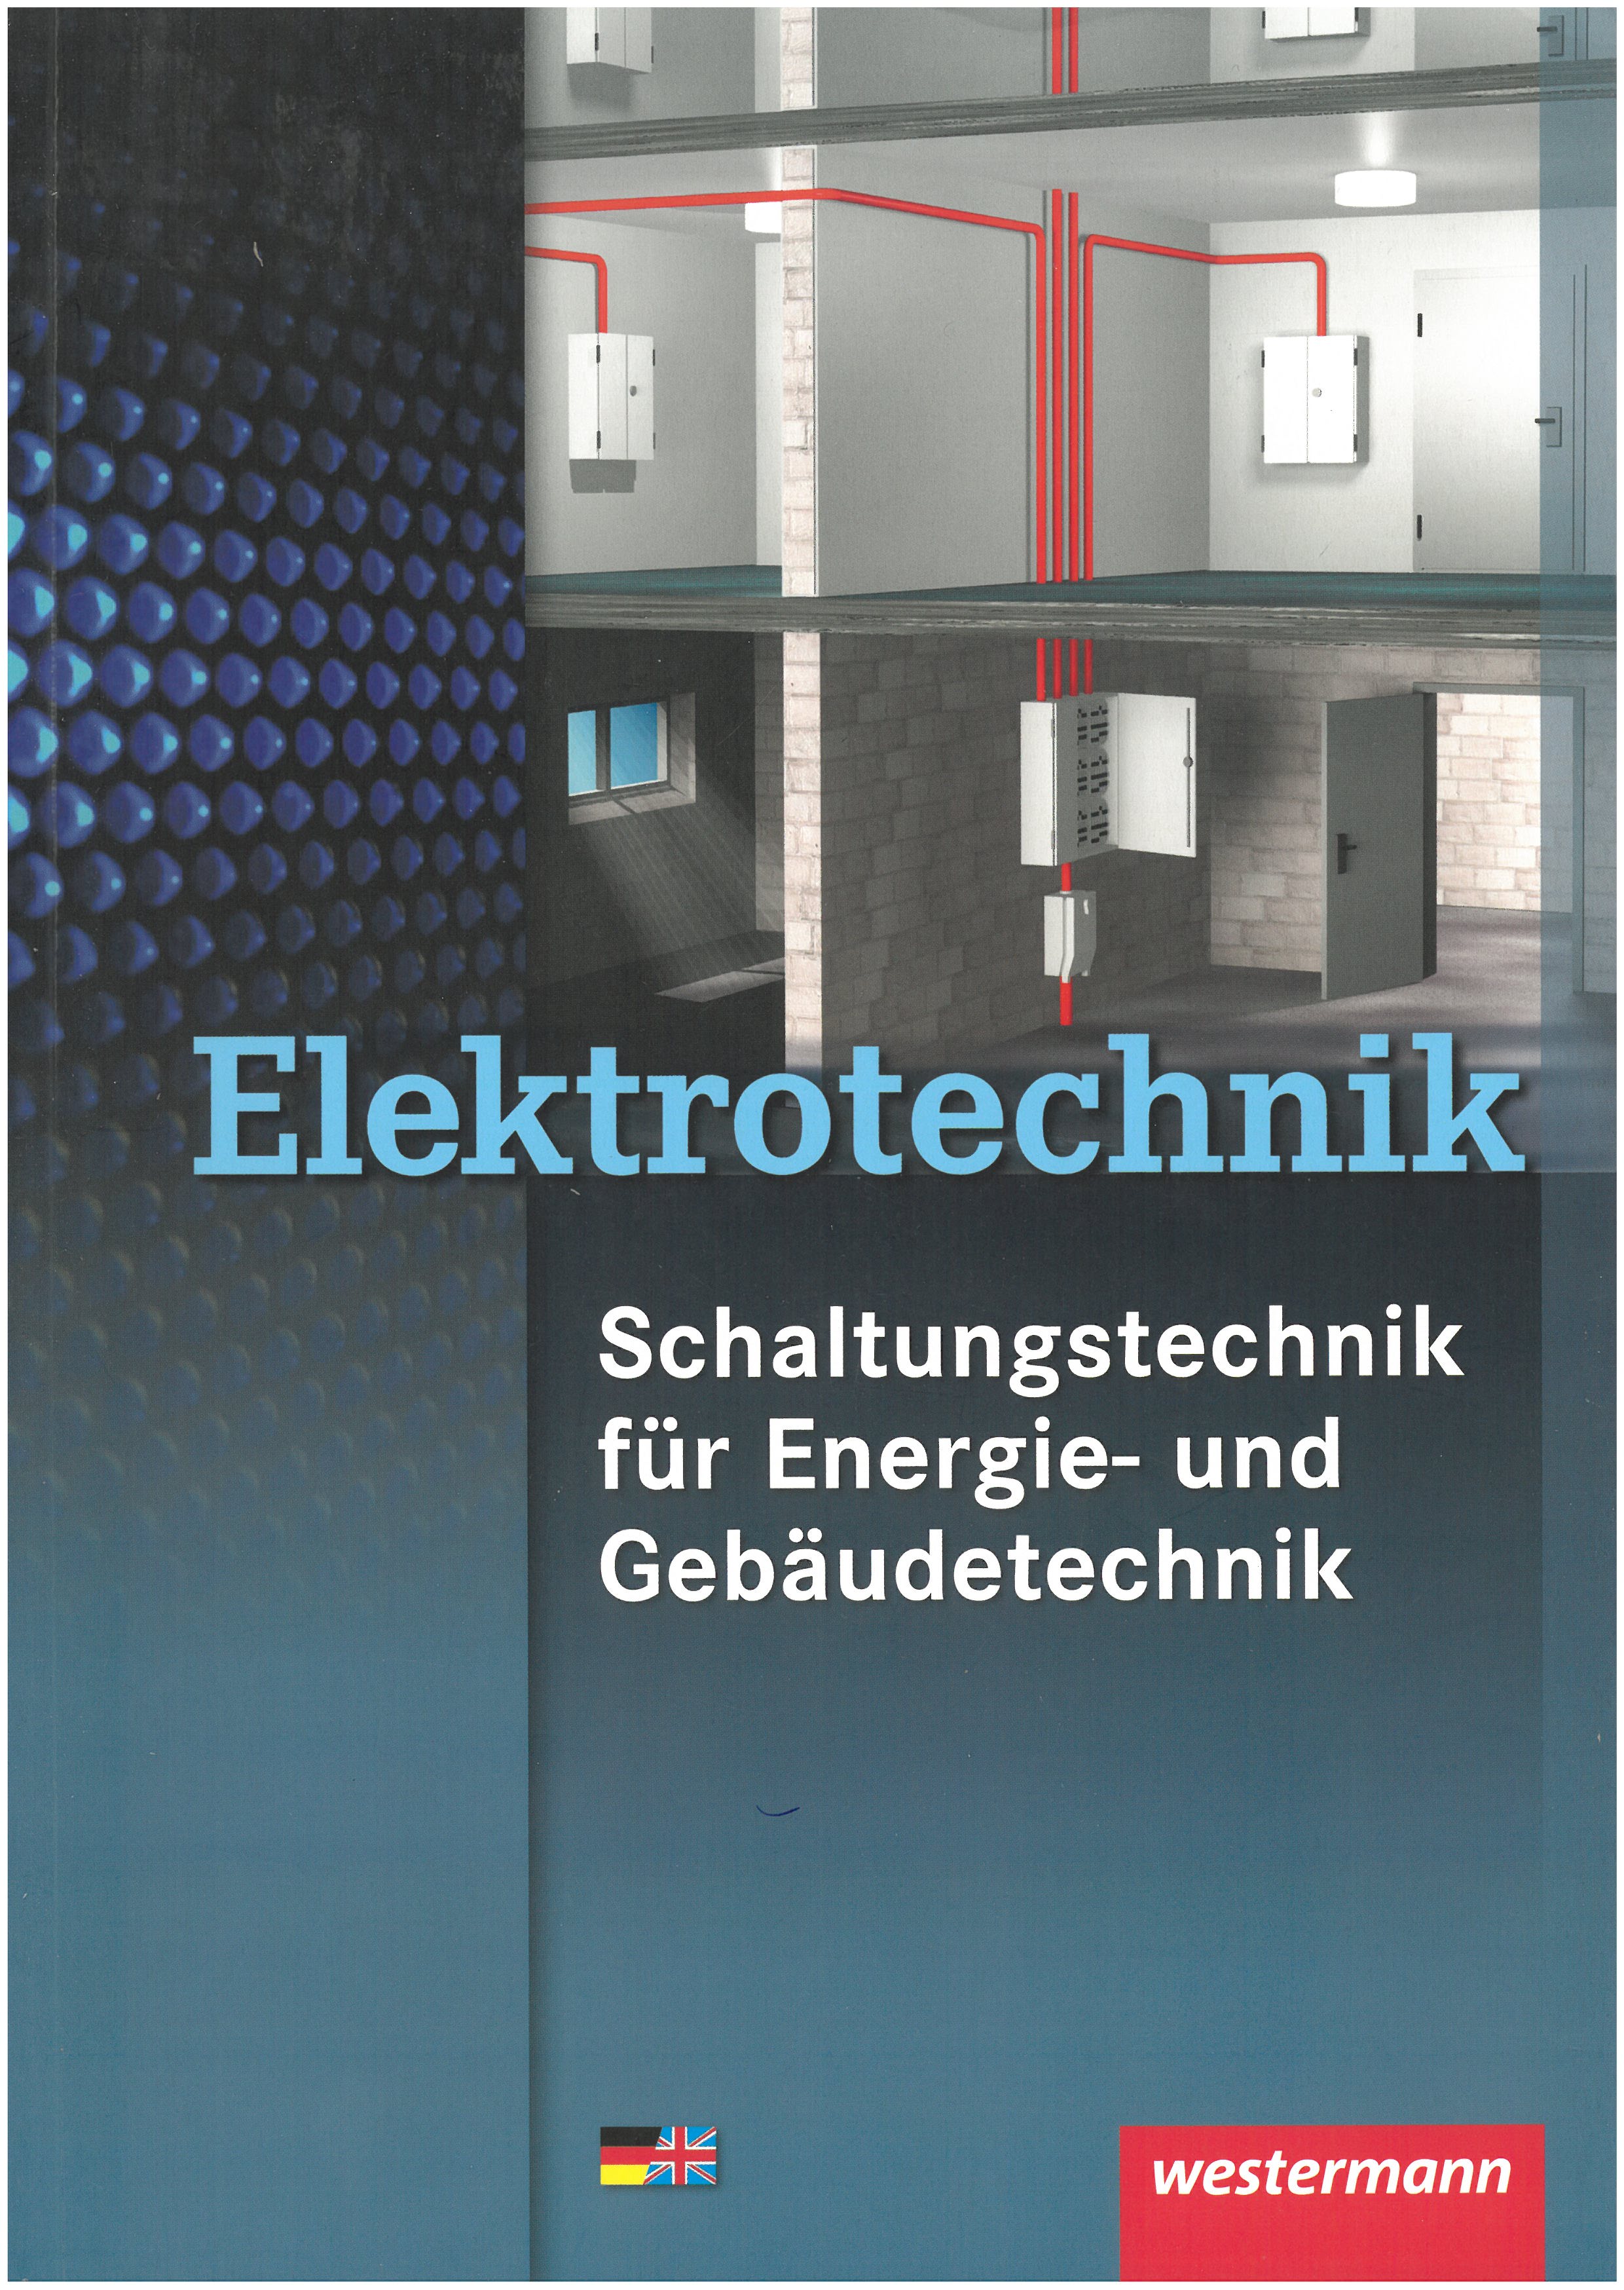 Elektritechnik._Schaltungstechnik.jpg